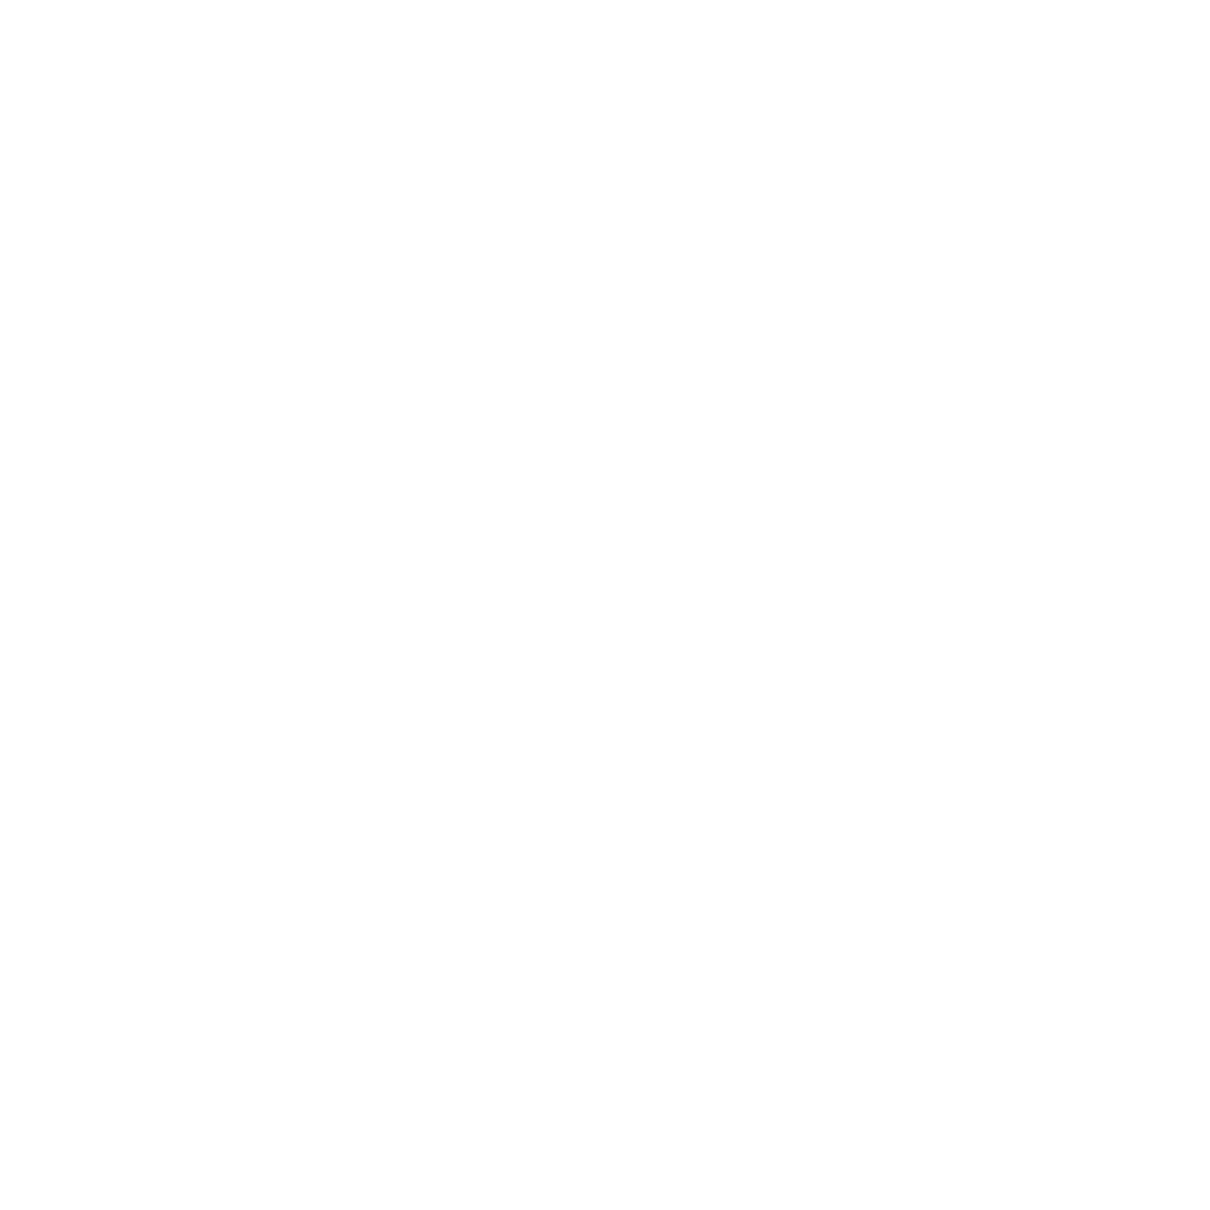 Cod Cove Inn Footer logo2